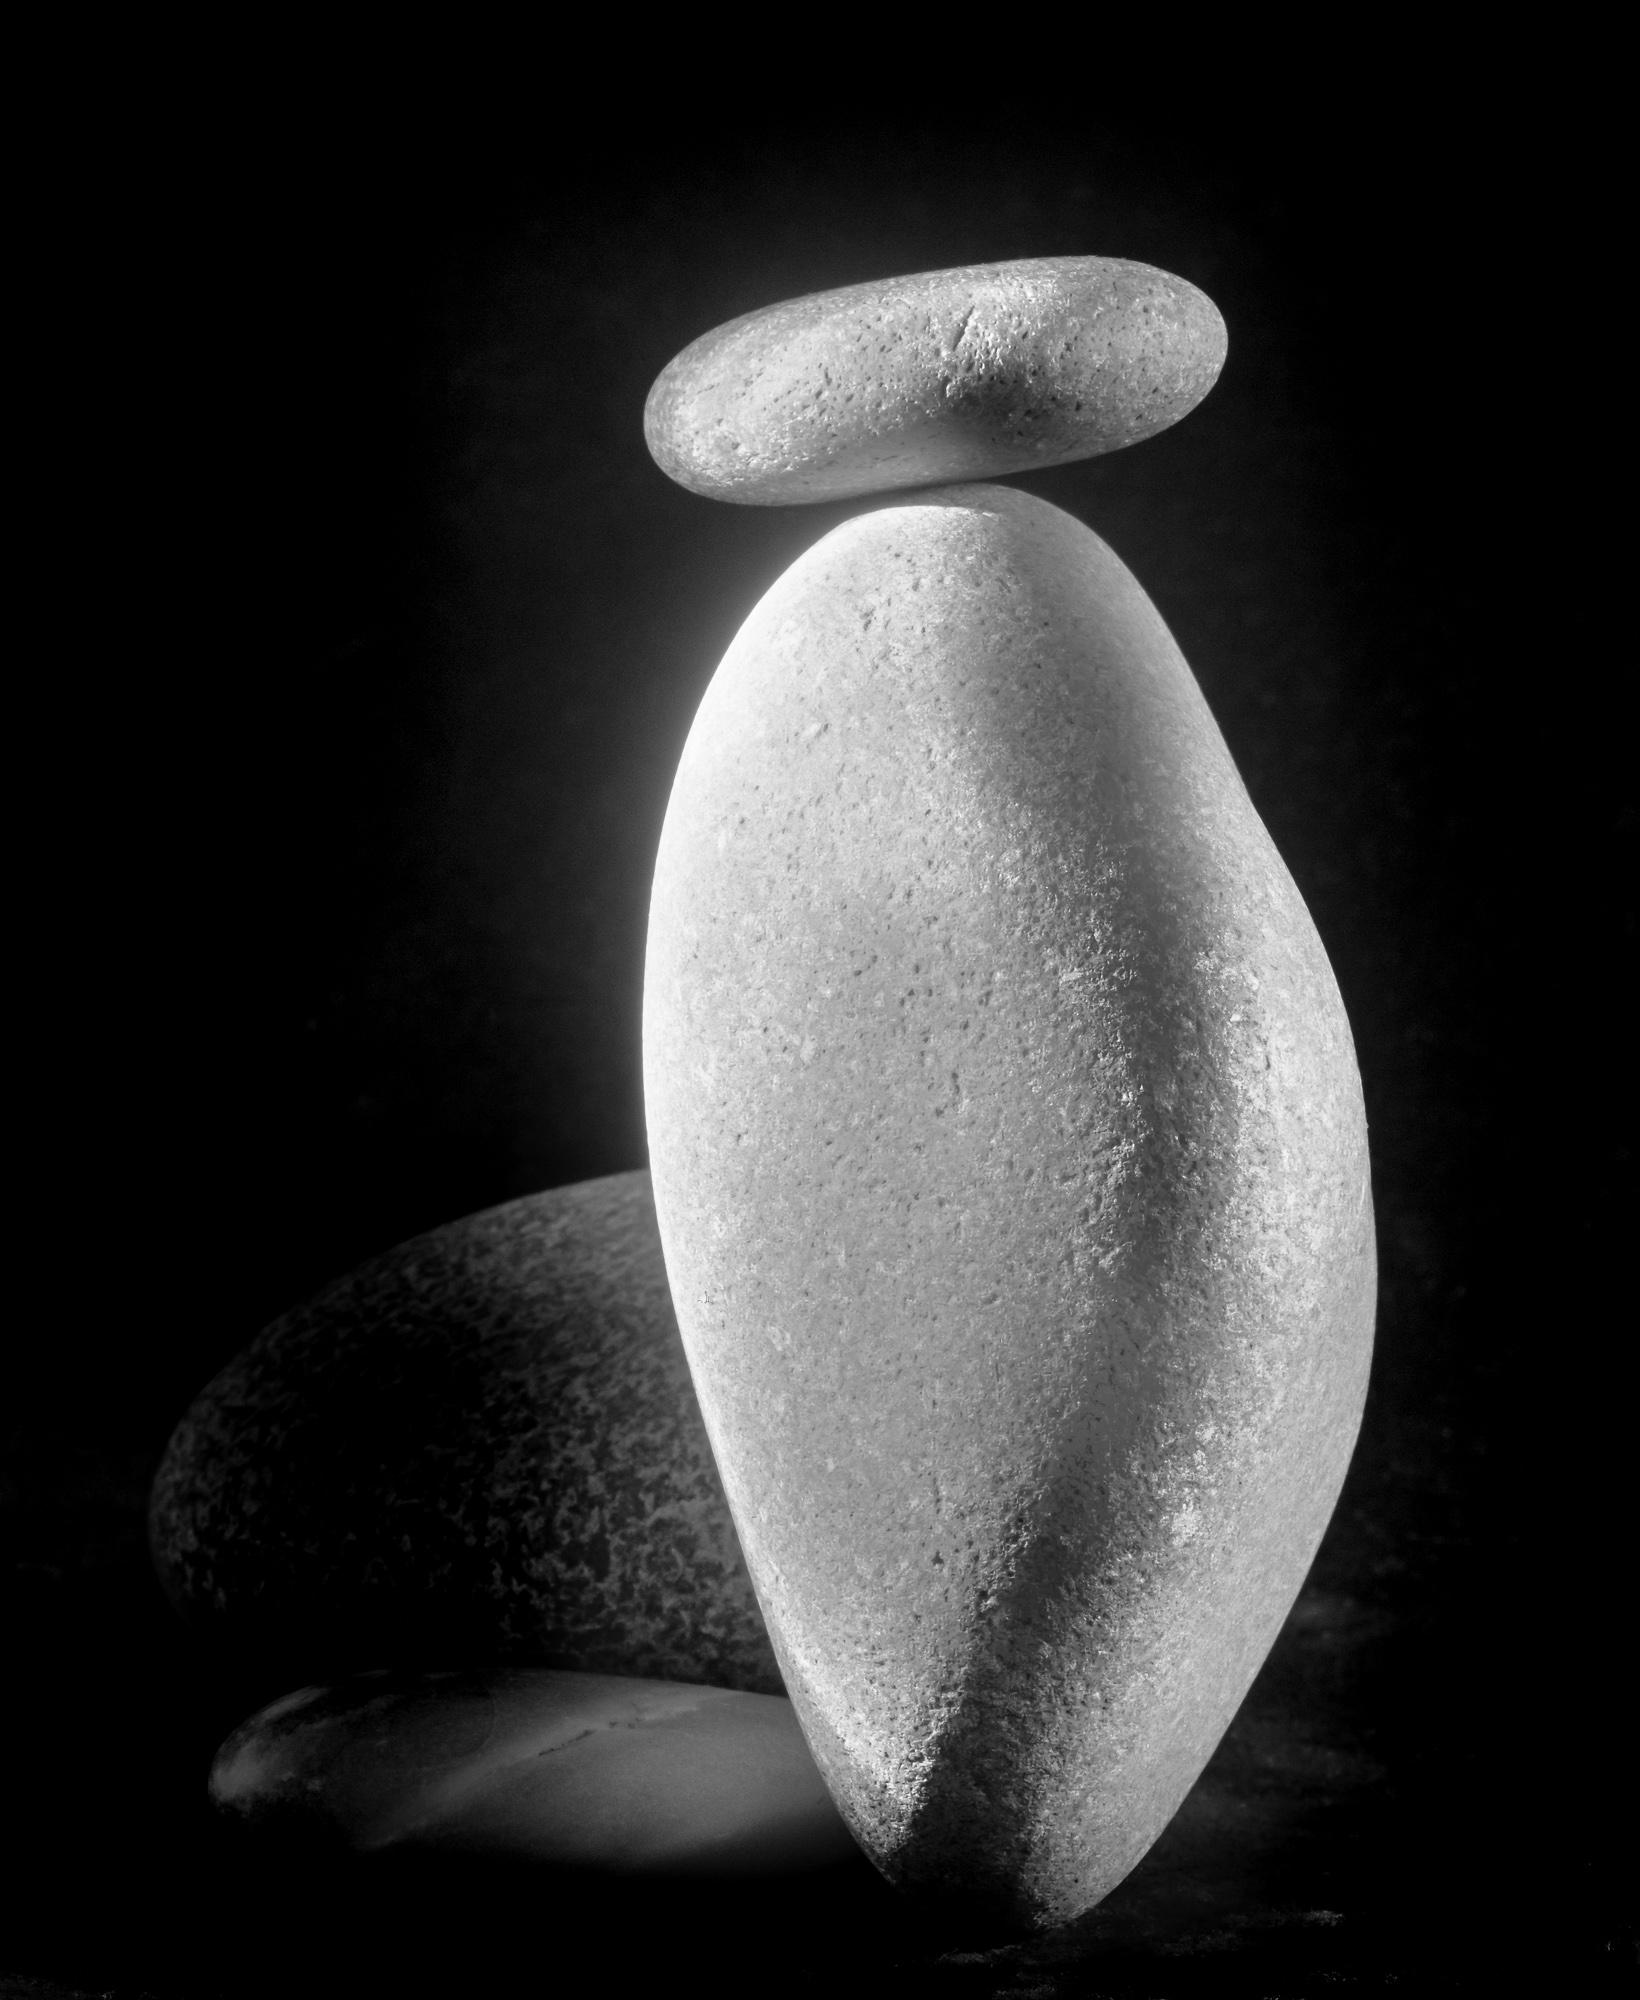  Schwarz-Weiß-Stillleben-Fotografie mit Wassersteinen in limitierter Auflage #29, 20 x 24